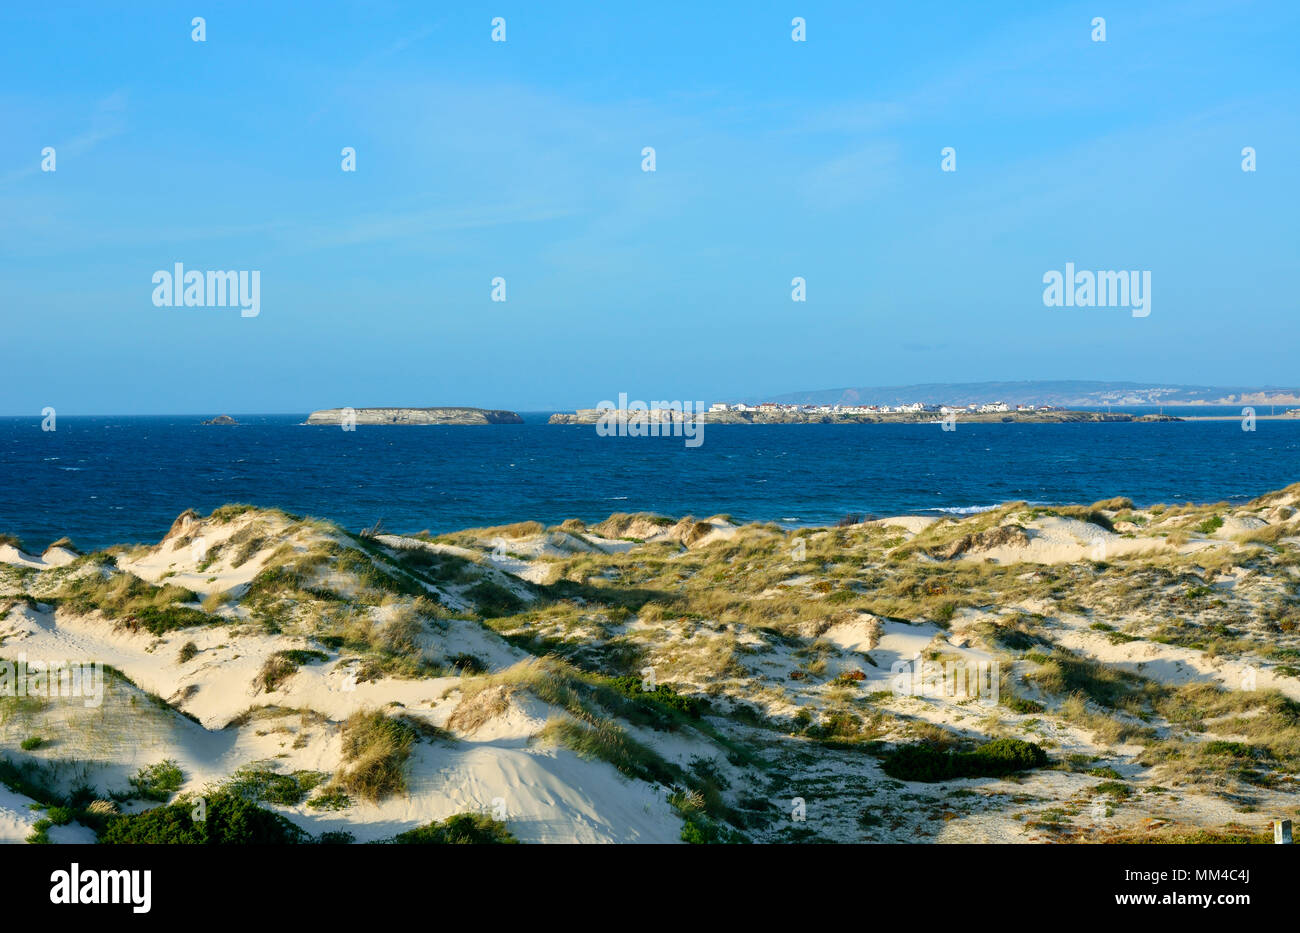 La playa dunas en Peniche. En el horizonte podemos ver la isla de Baleal, sobre la costa atlántica de Portugal Foto de stock